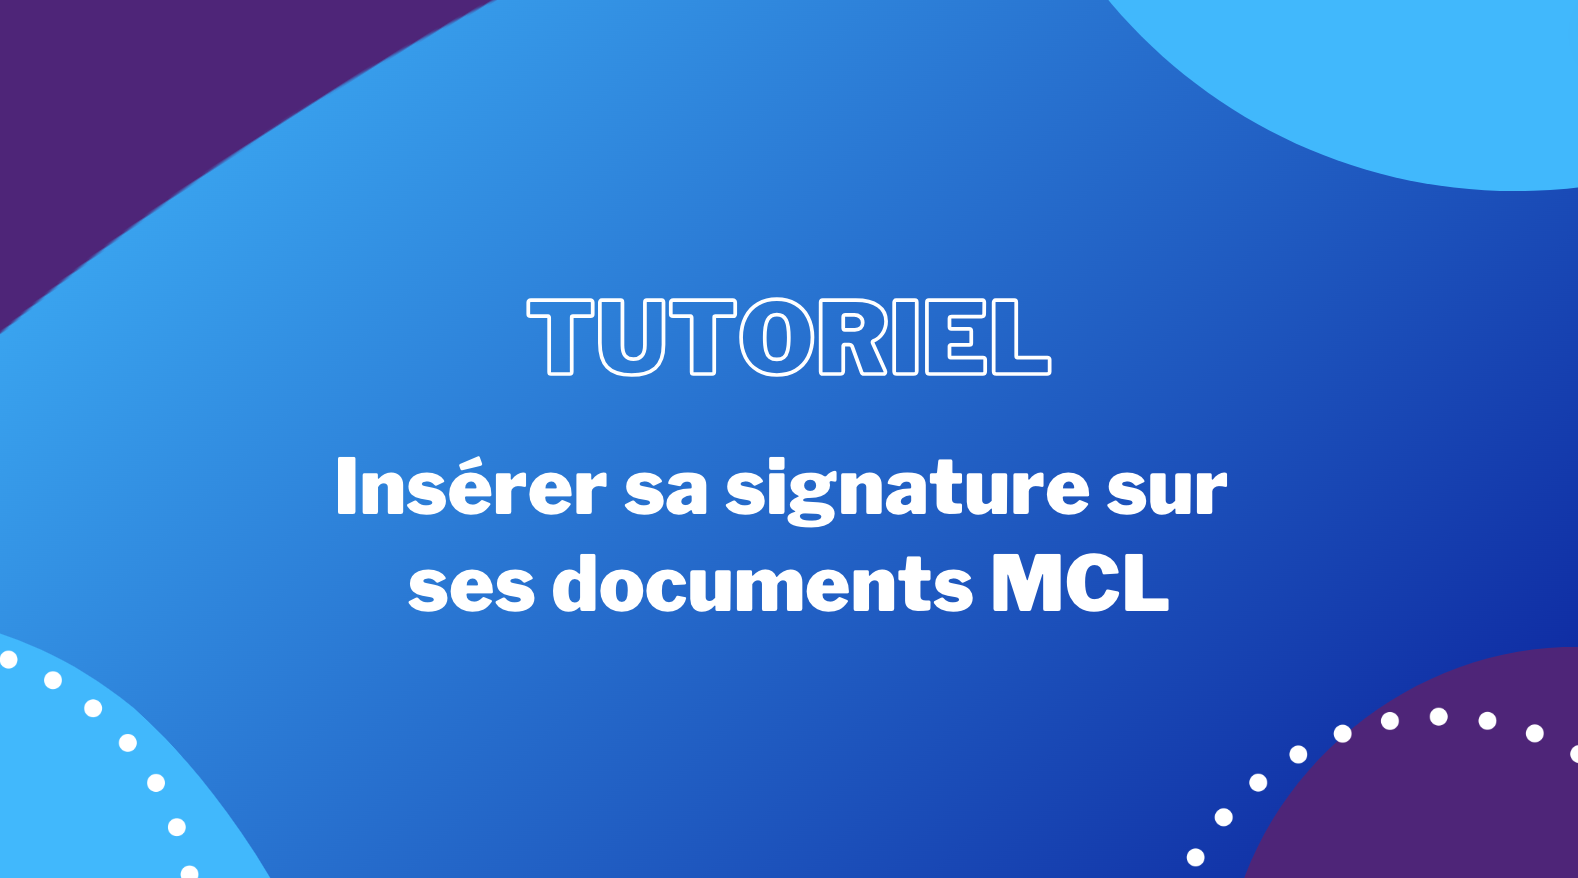 tutoriel-inserer-sa-signature-sur-ses-documents-mcl